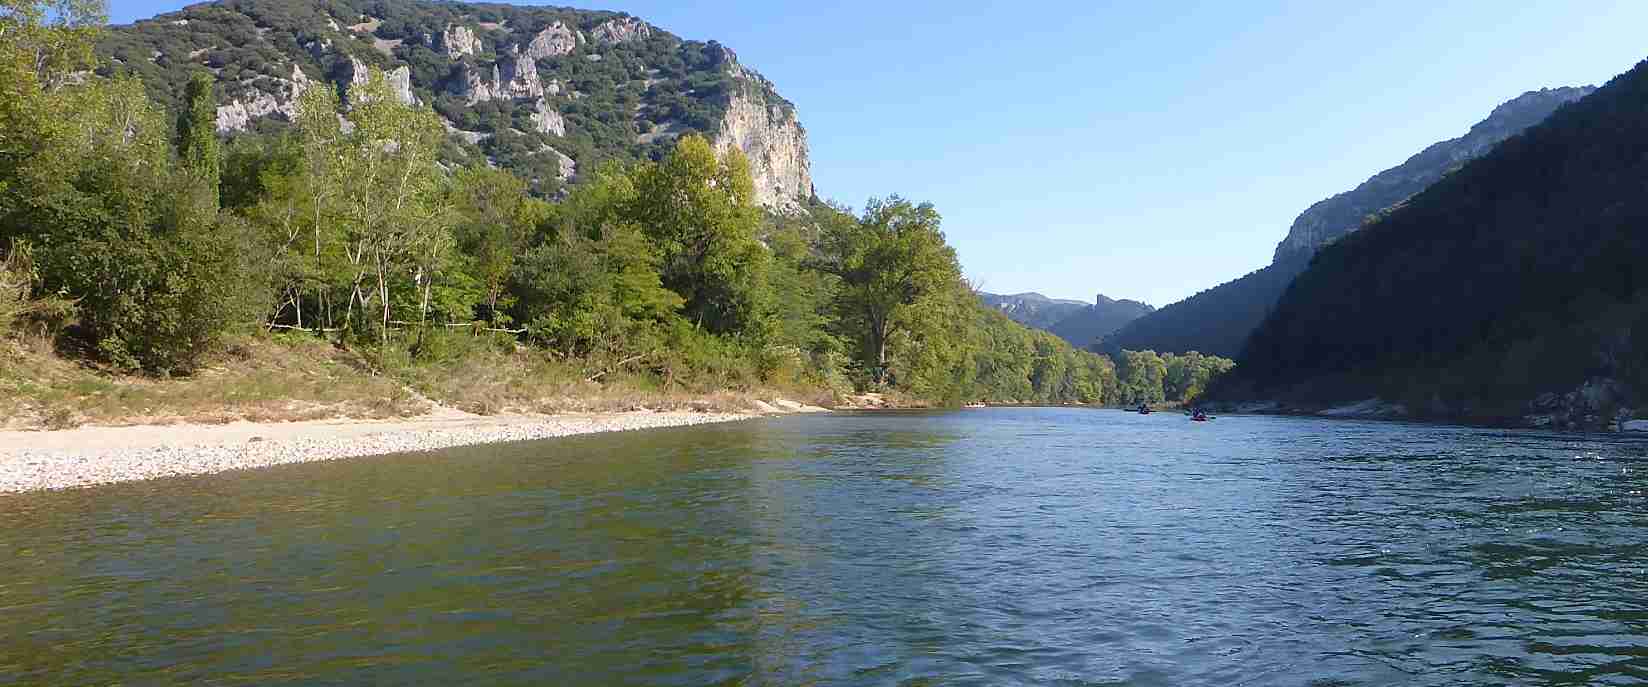 Descente de l'Ardèche : La Réserve Naturelle 24 km (Gorges de l'Ardèche)